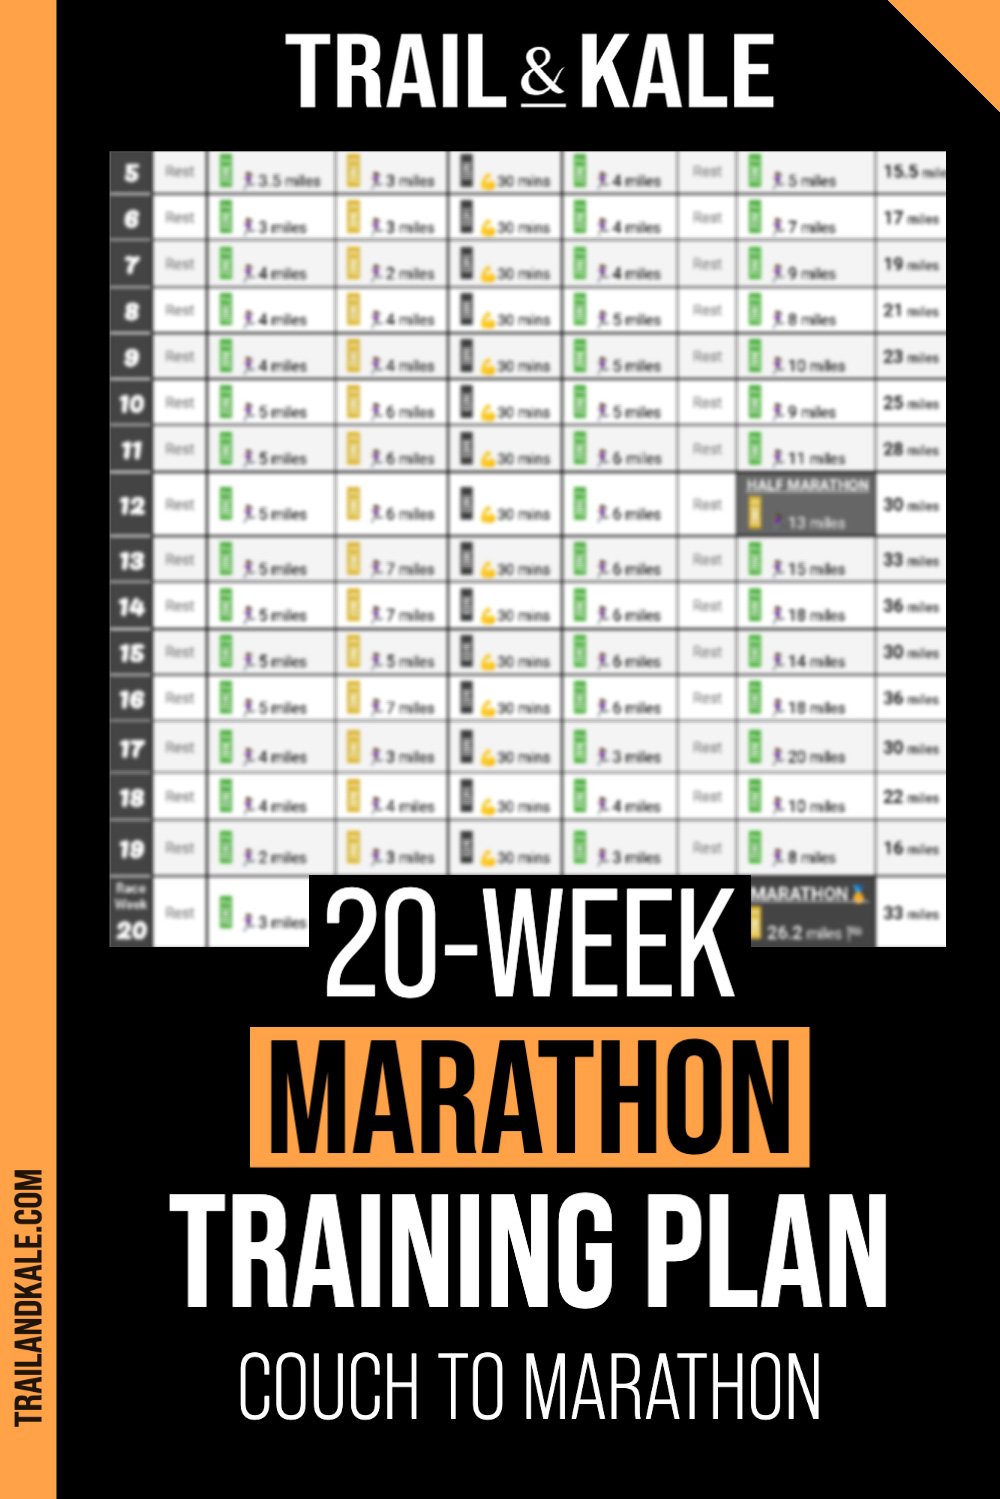 20 Week Marathon Training Plan Couch to Marathon by Trail Kale